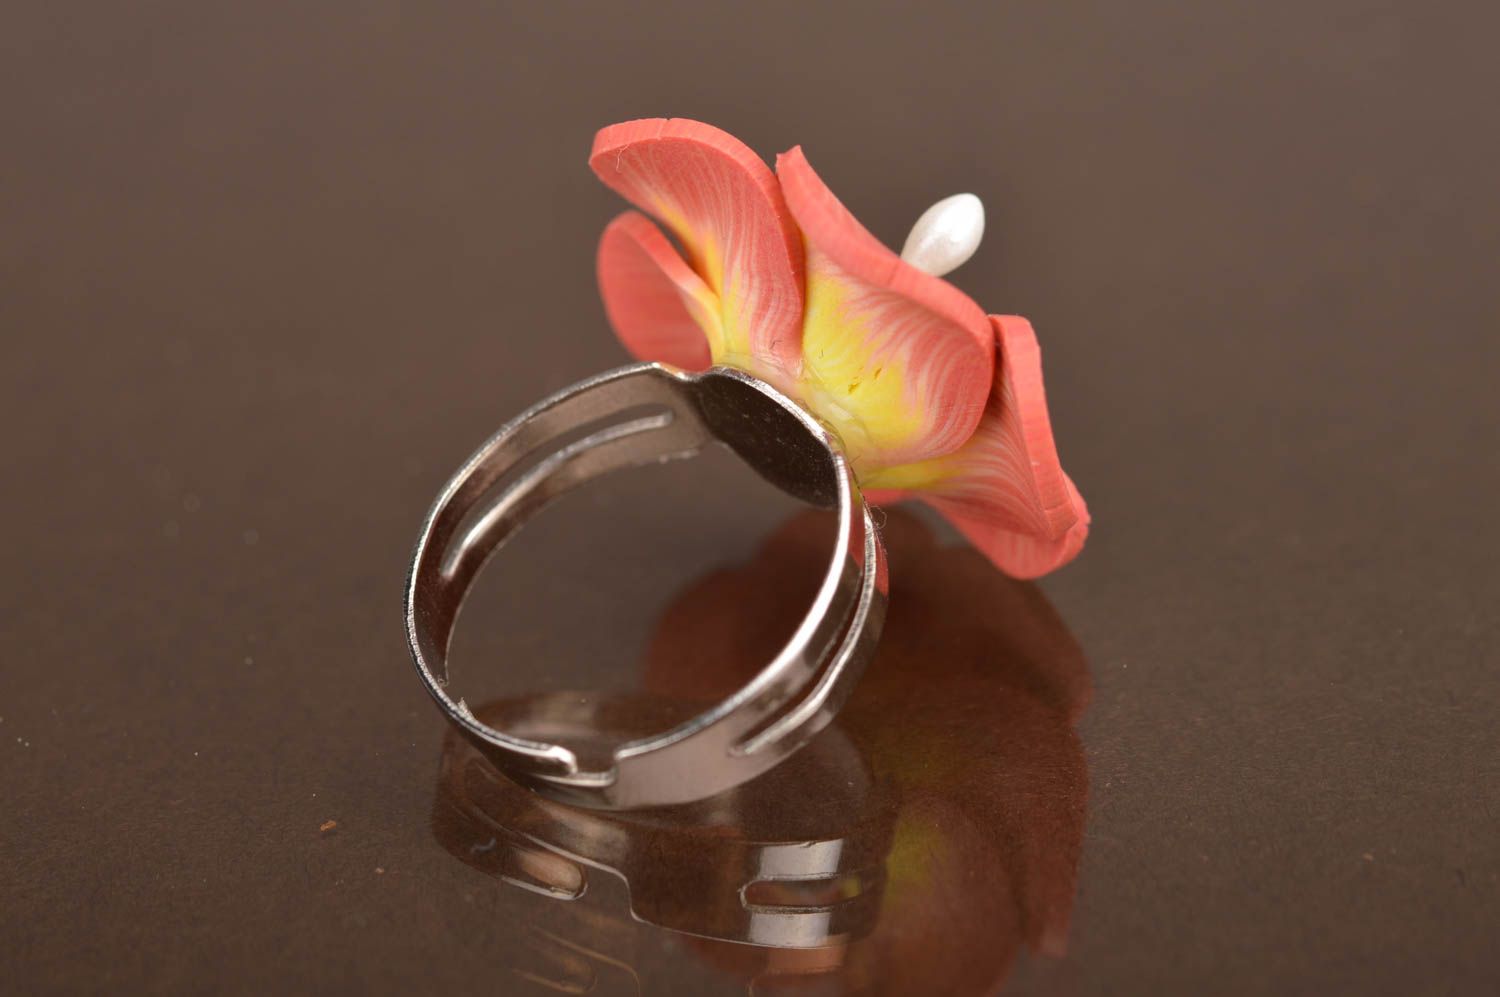 Кольцо цветок из полимерной глины персиковое нежное крупное ручная работа фото 3